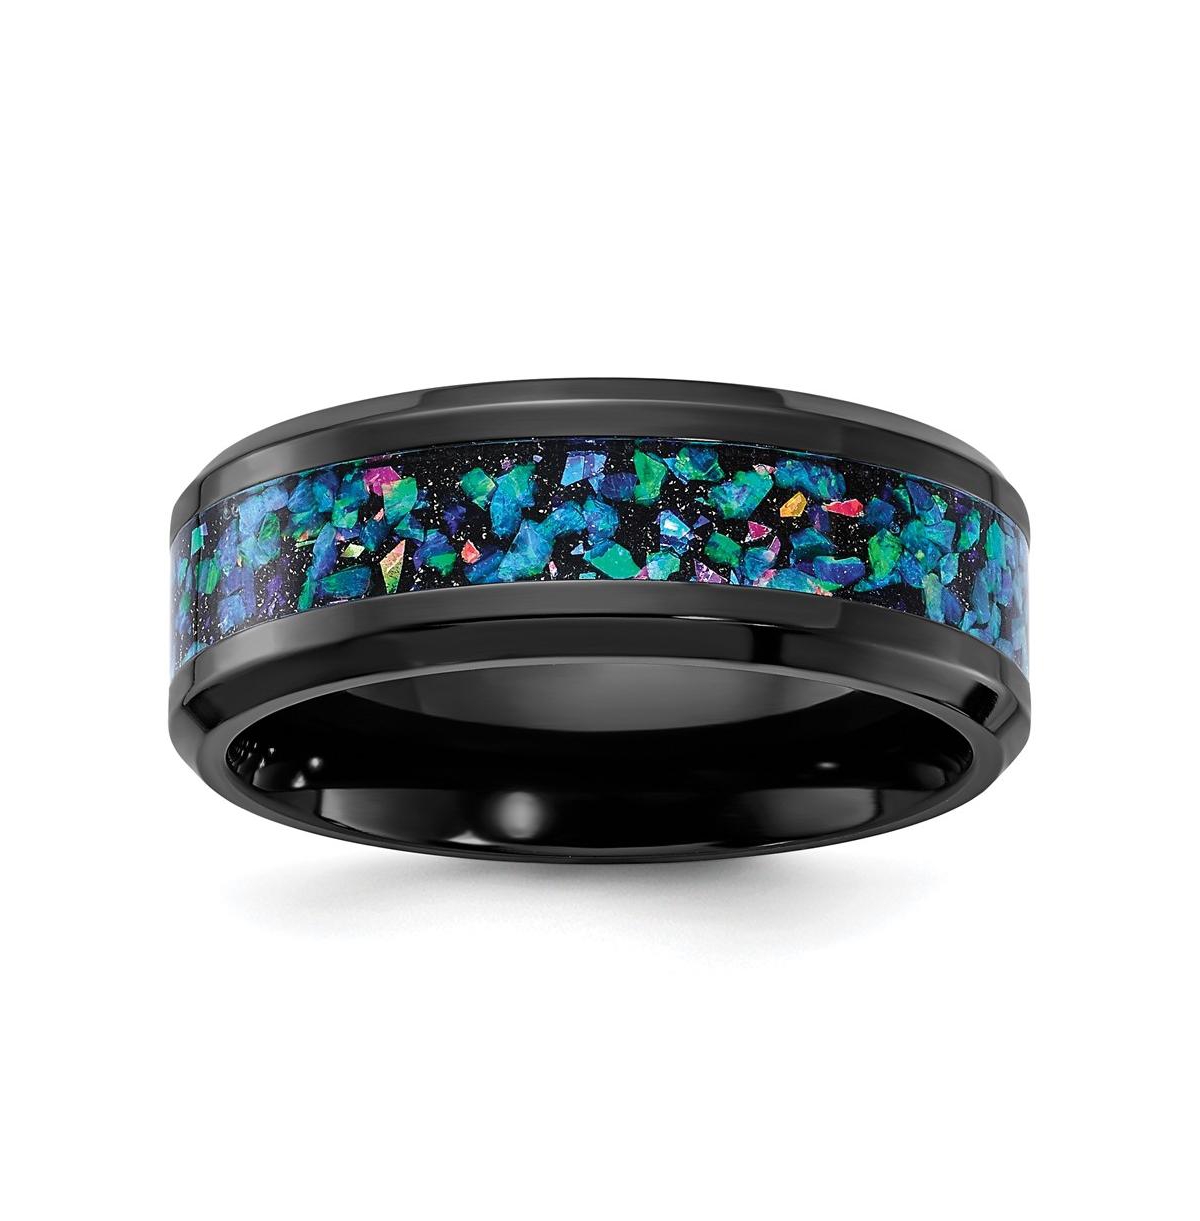 Black Zirconium Imitation Opal Inlay Wedding Band Ring - Black